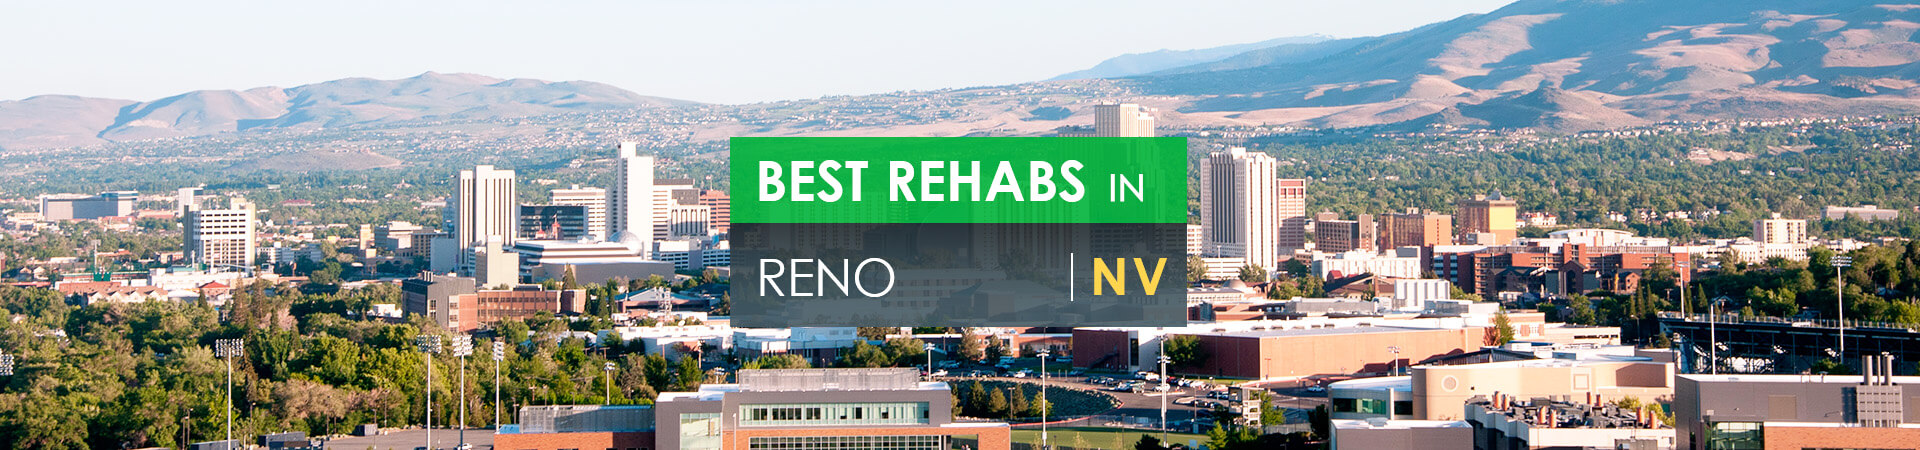 Best rehabs in Reno, NV